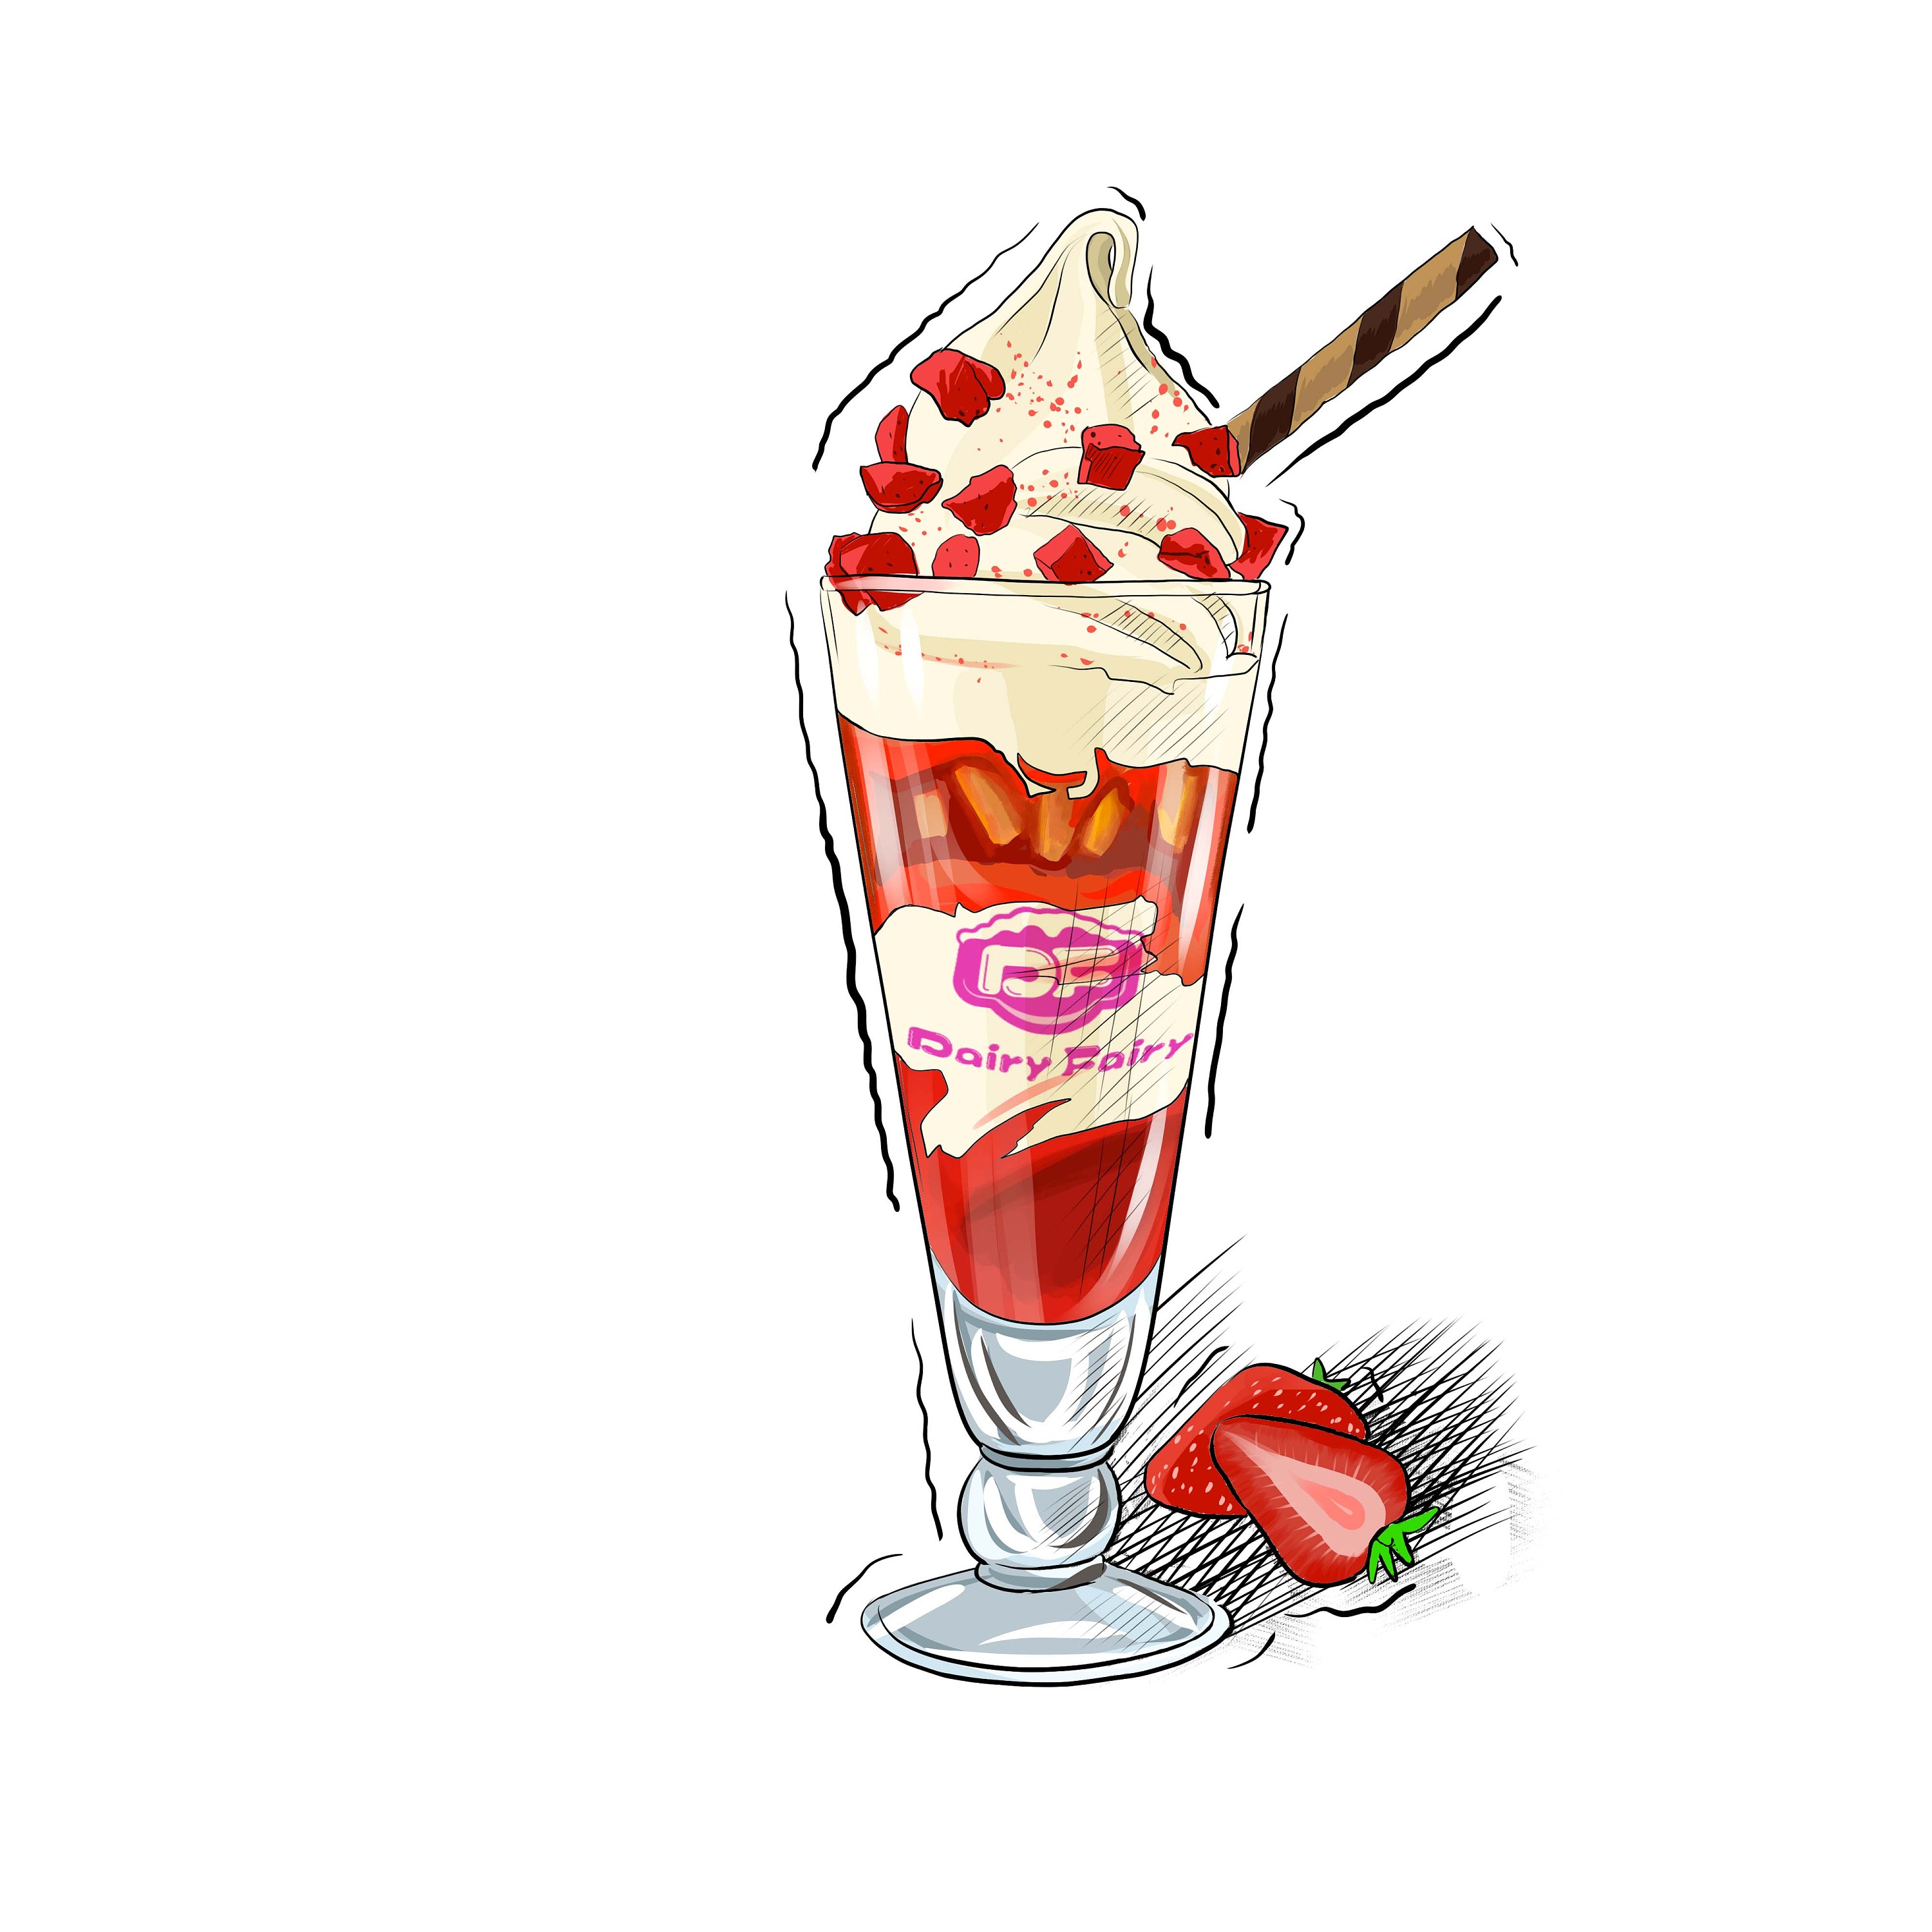 可愛卡通甜筒冰淇淋PSD圖案素材免費下載 - 尺寸2048 × 2048px - 圖形ID401251554 - Lovepik